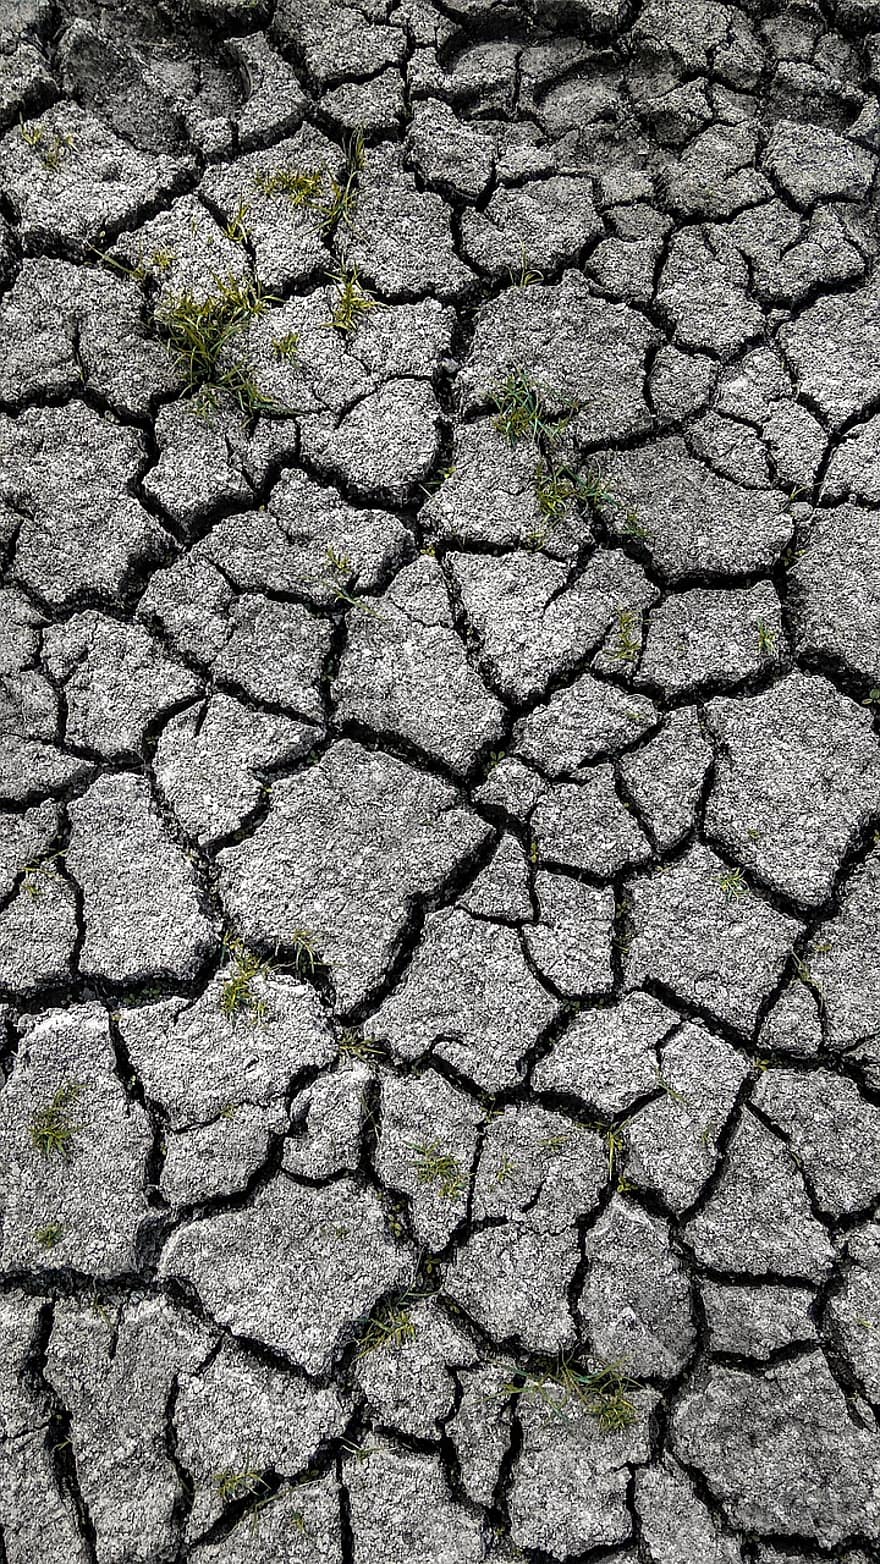 kuraklık, toprak, kil, çöl, çatlaklar, kırık dünya, kuru